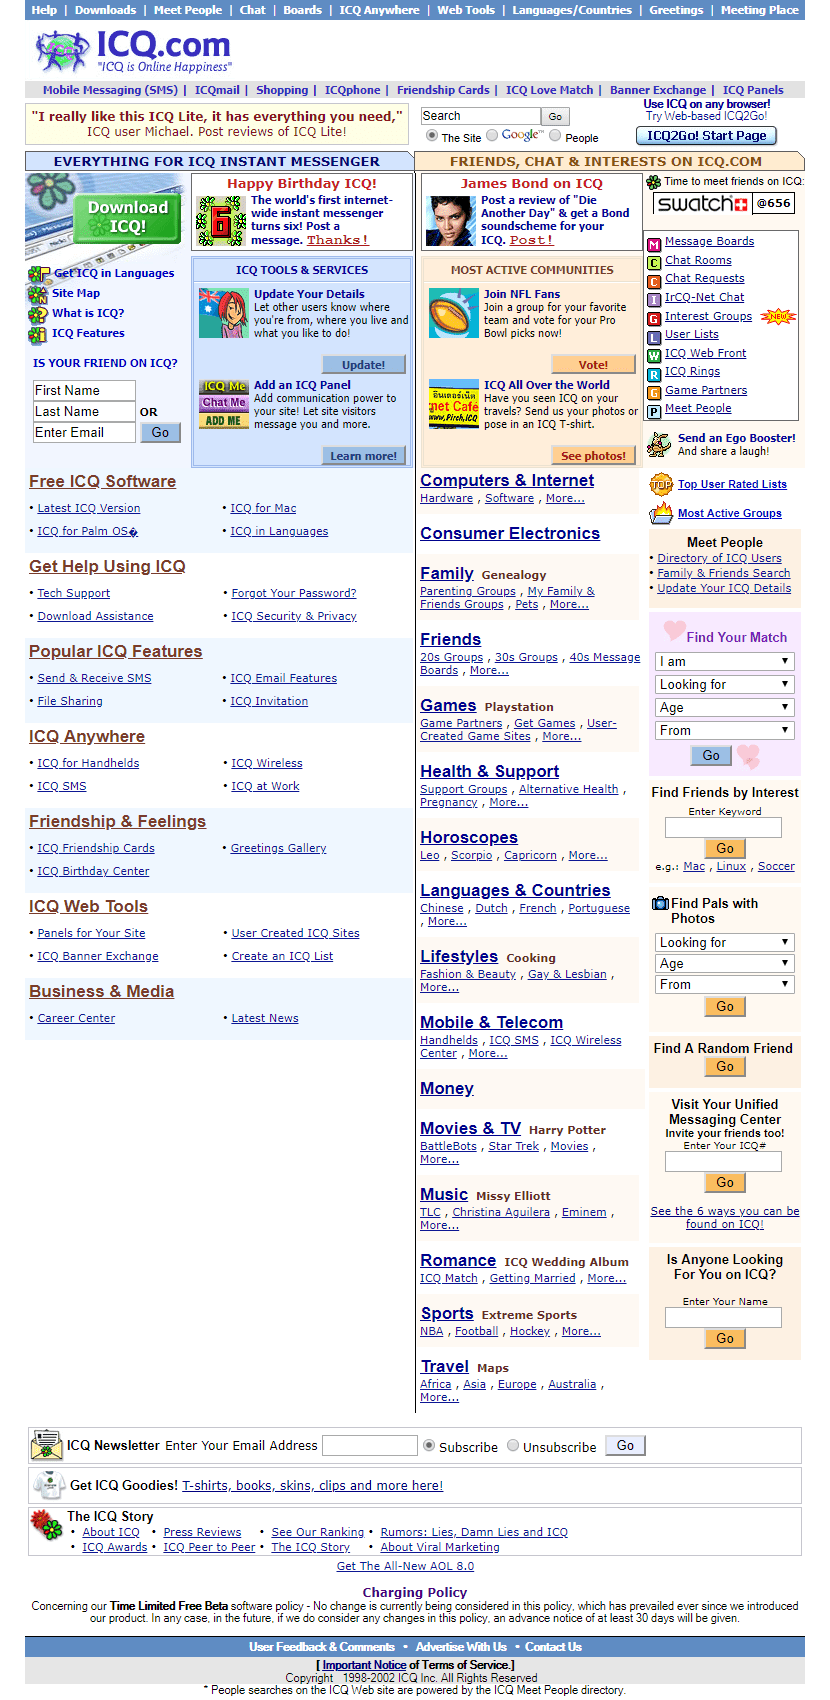 ICQ website in 2002